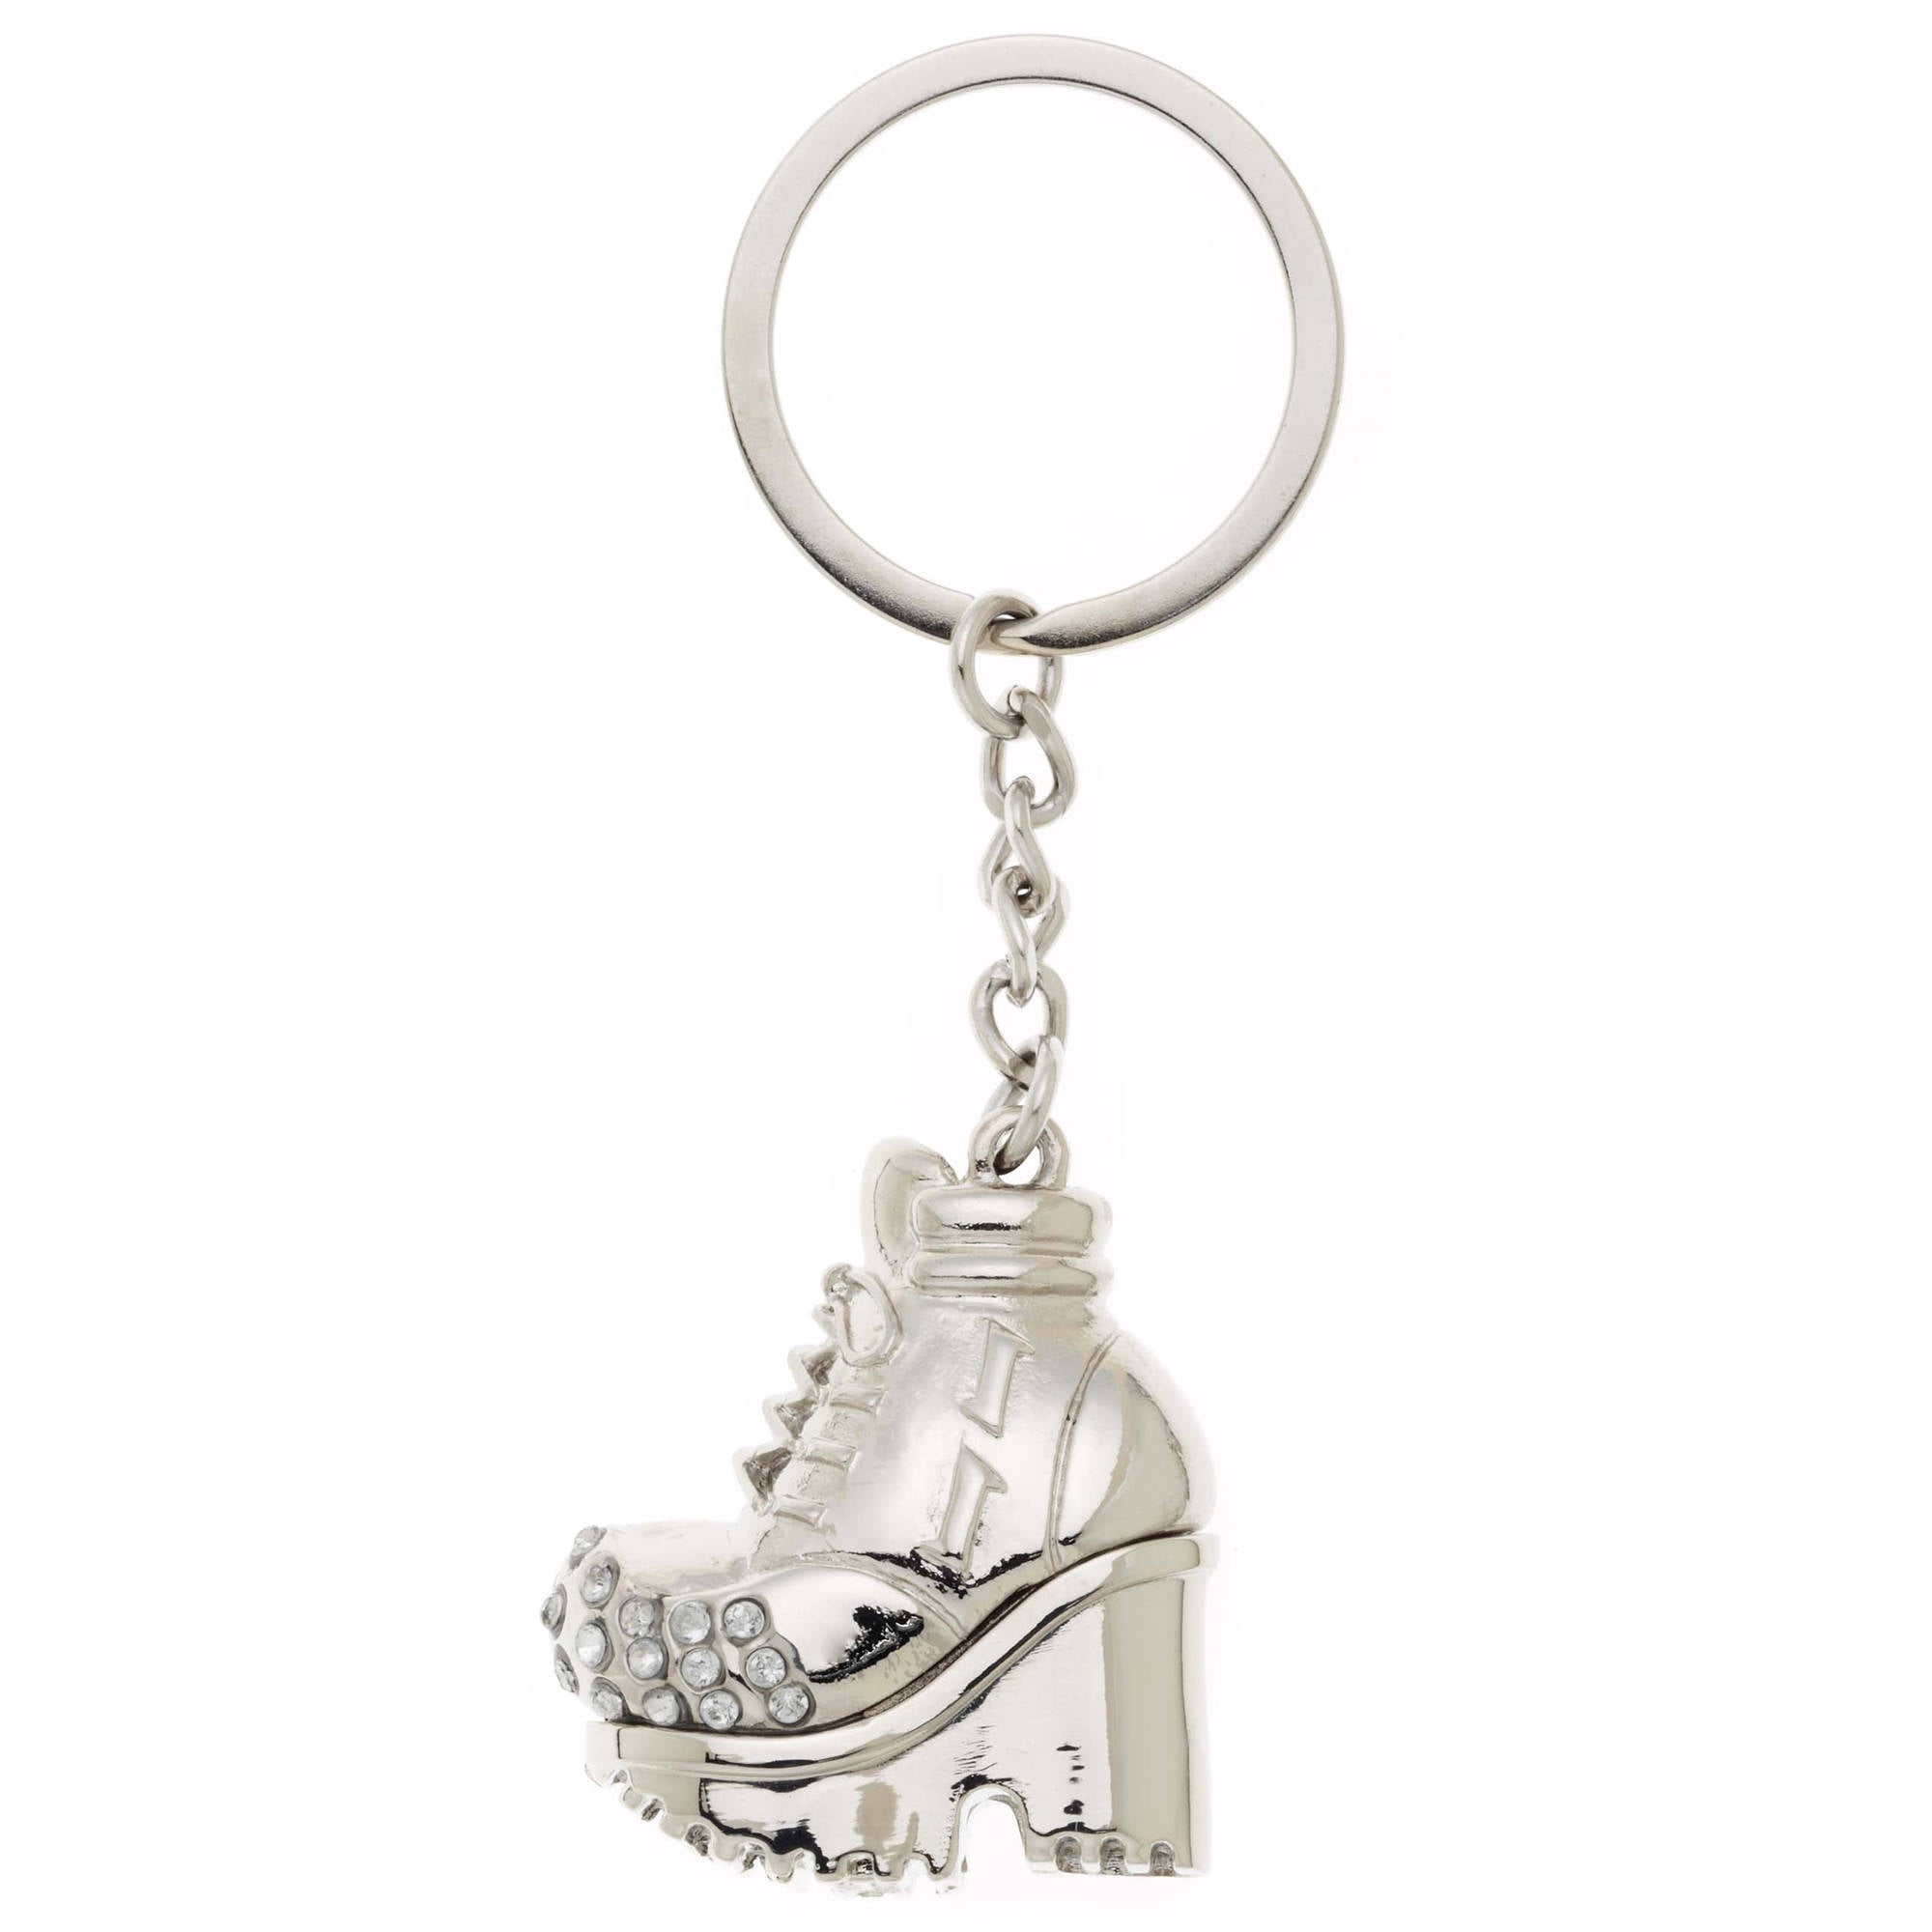 Bunny Rabbit Fashionable Sparkling Charm Elegant Keychain 723736602002 